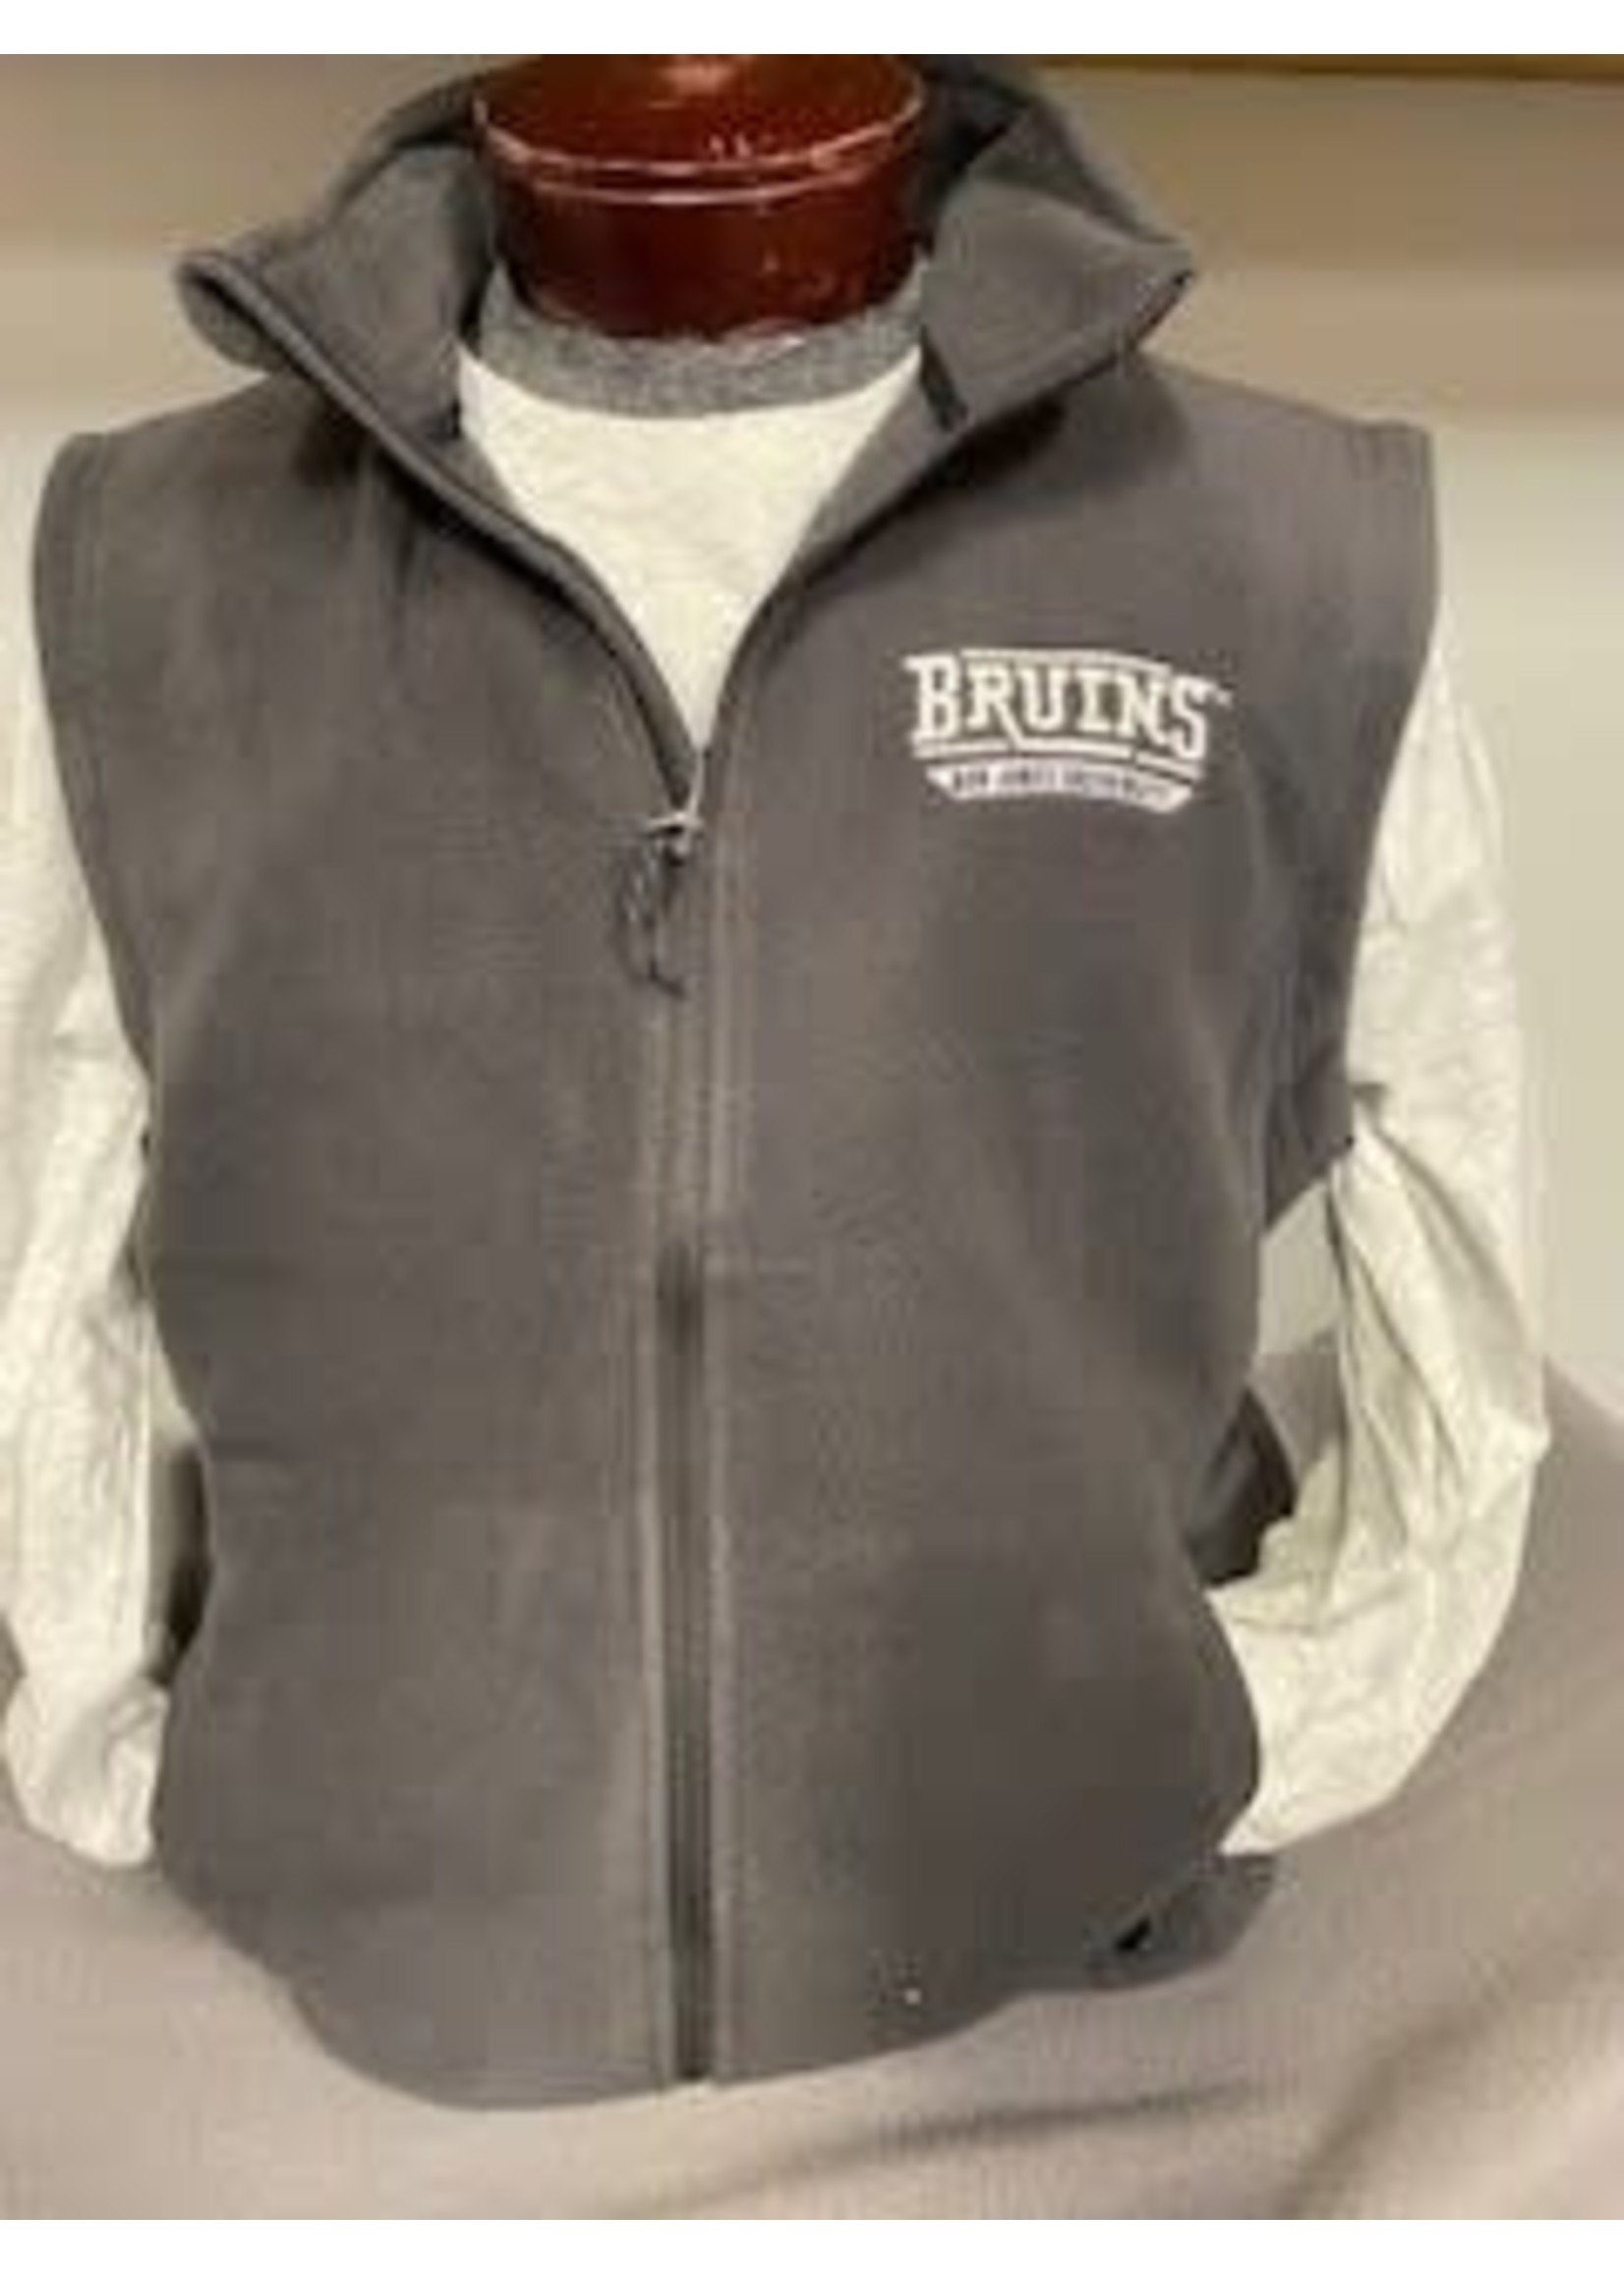 Bruins Fleece Vest Gray